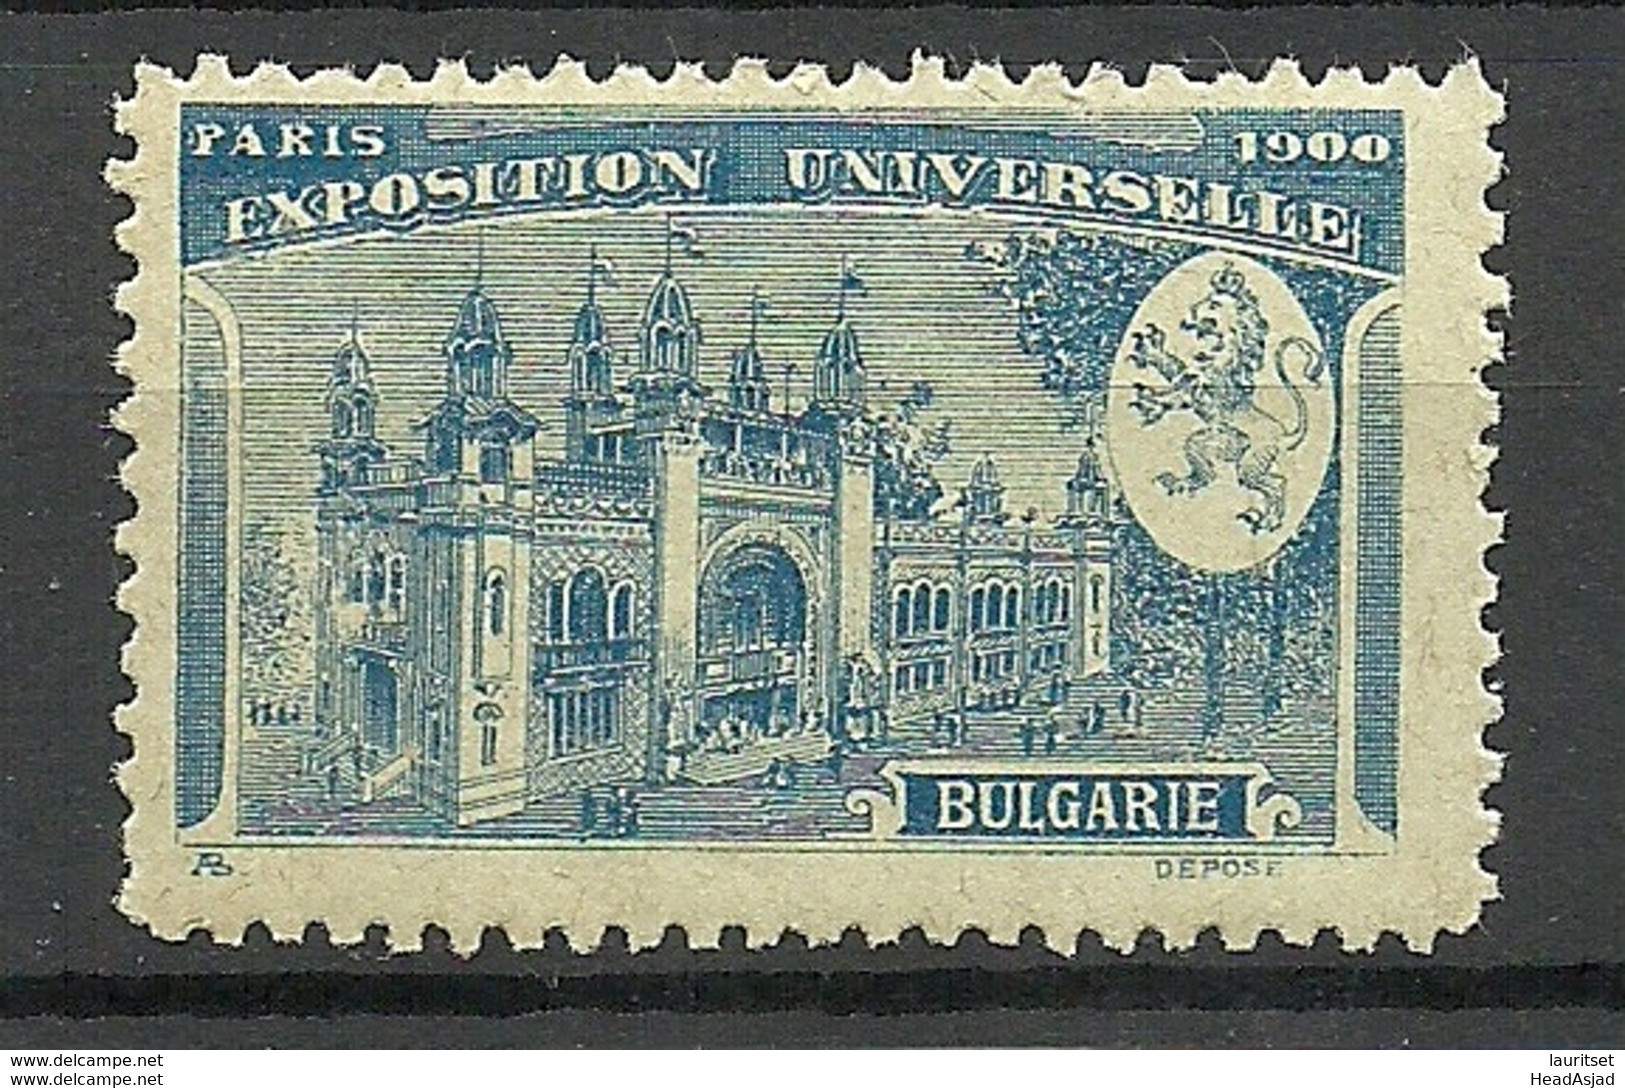 France 1900 EXPOSITION UNIVERSELLE Paris Bulgarie Bulgaria Pavillon MNH - 1900 – Paris (Frankreich)